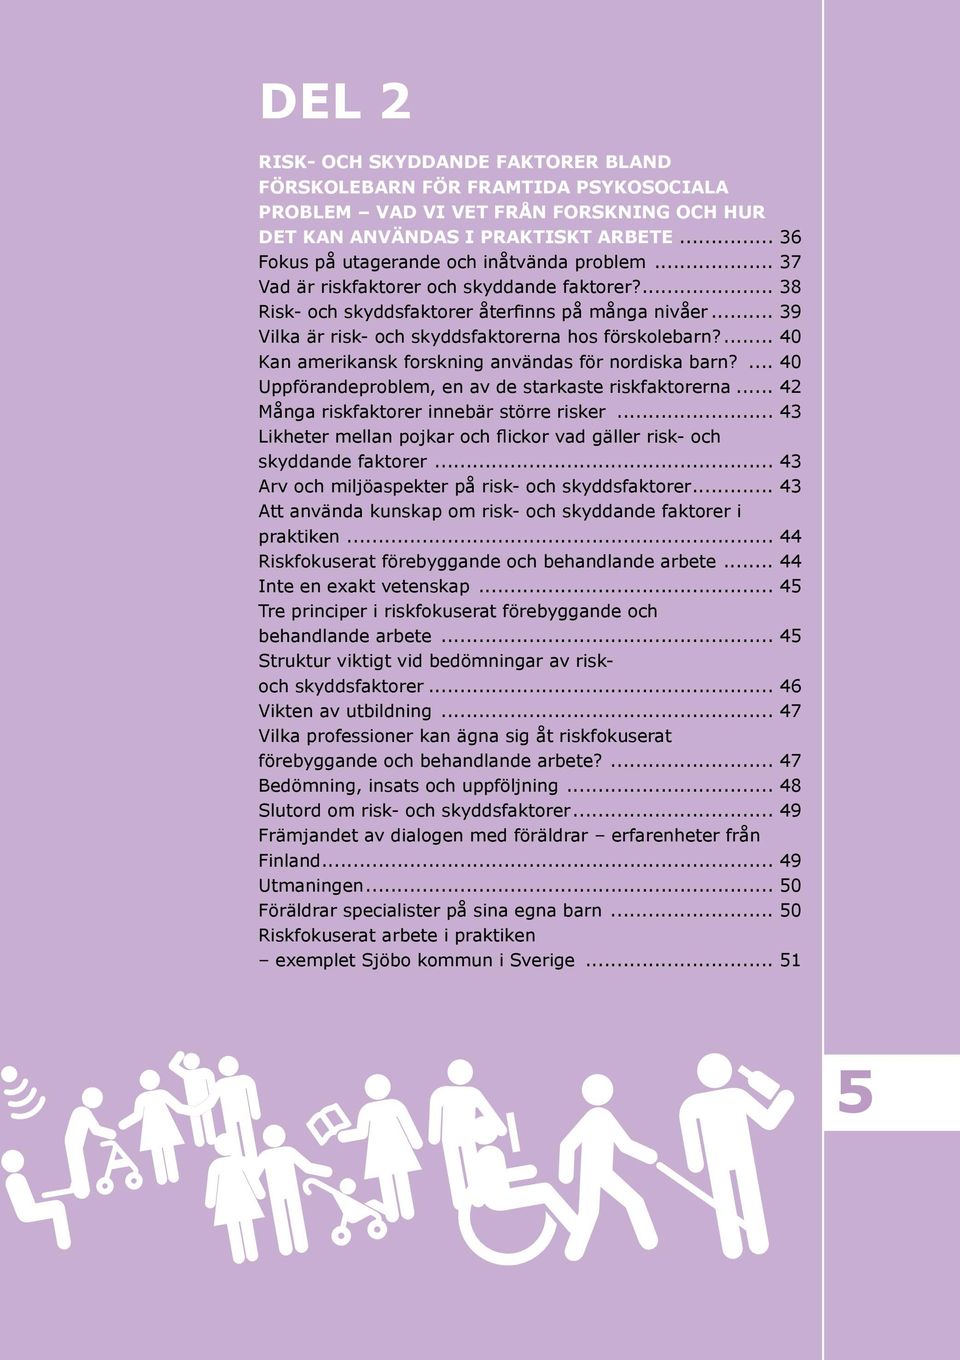 .. 39 Vilka är risk- och skyddsfaktorerna hos förskolebarn?... 40 Kan amerikansk forskning användas för nordiska barn?... 40 Uppförandeproblem, en av de starkaste riskfaktorerna.